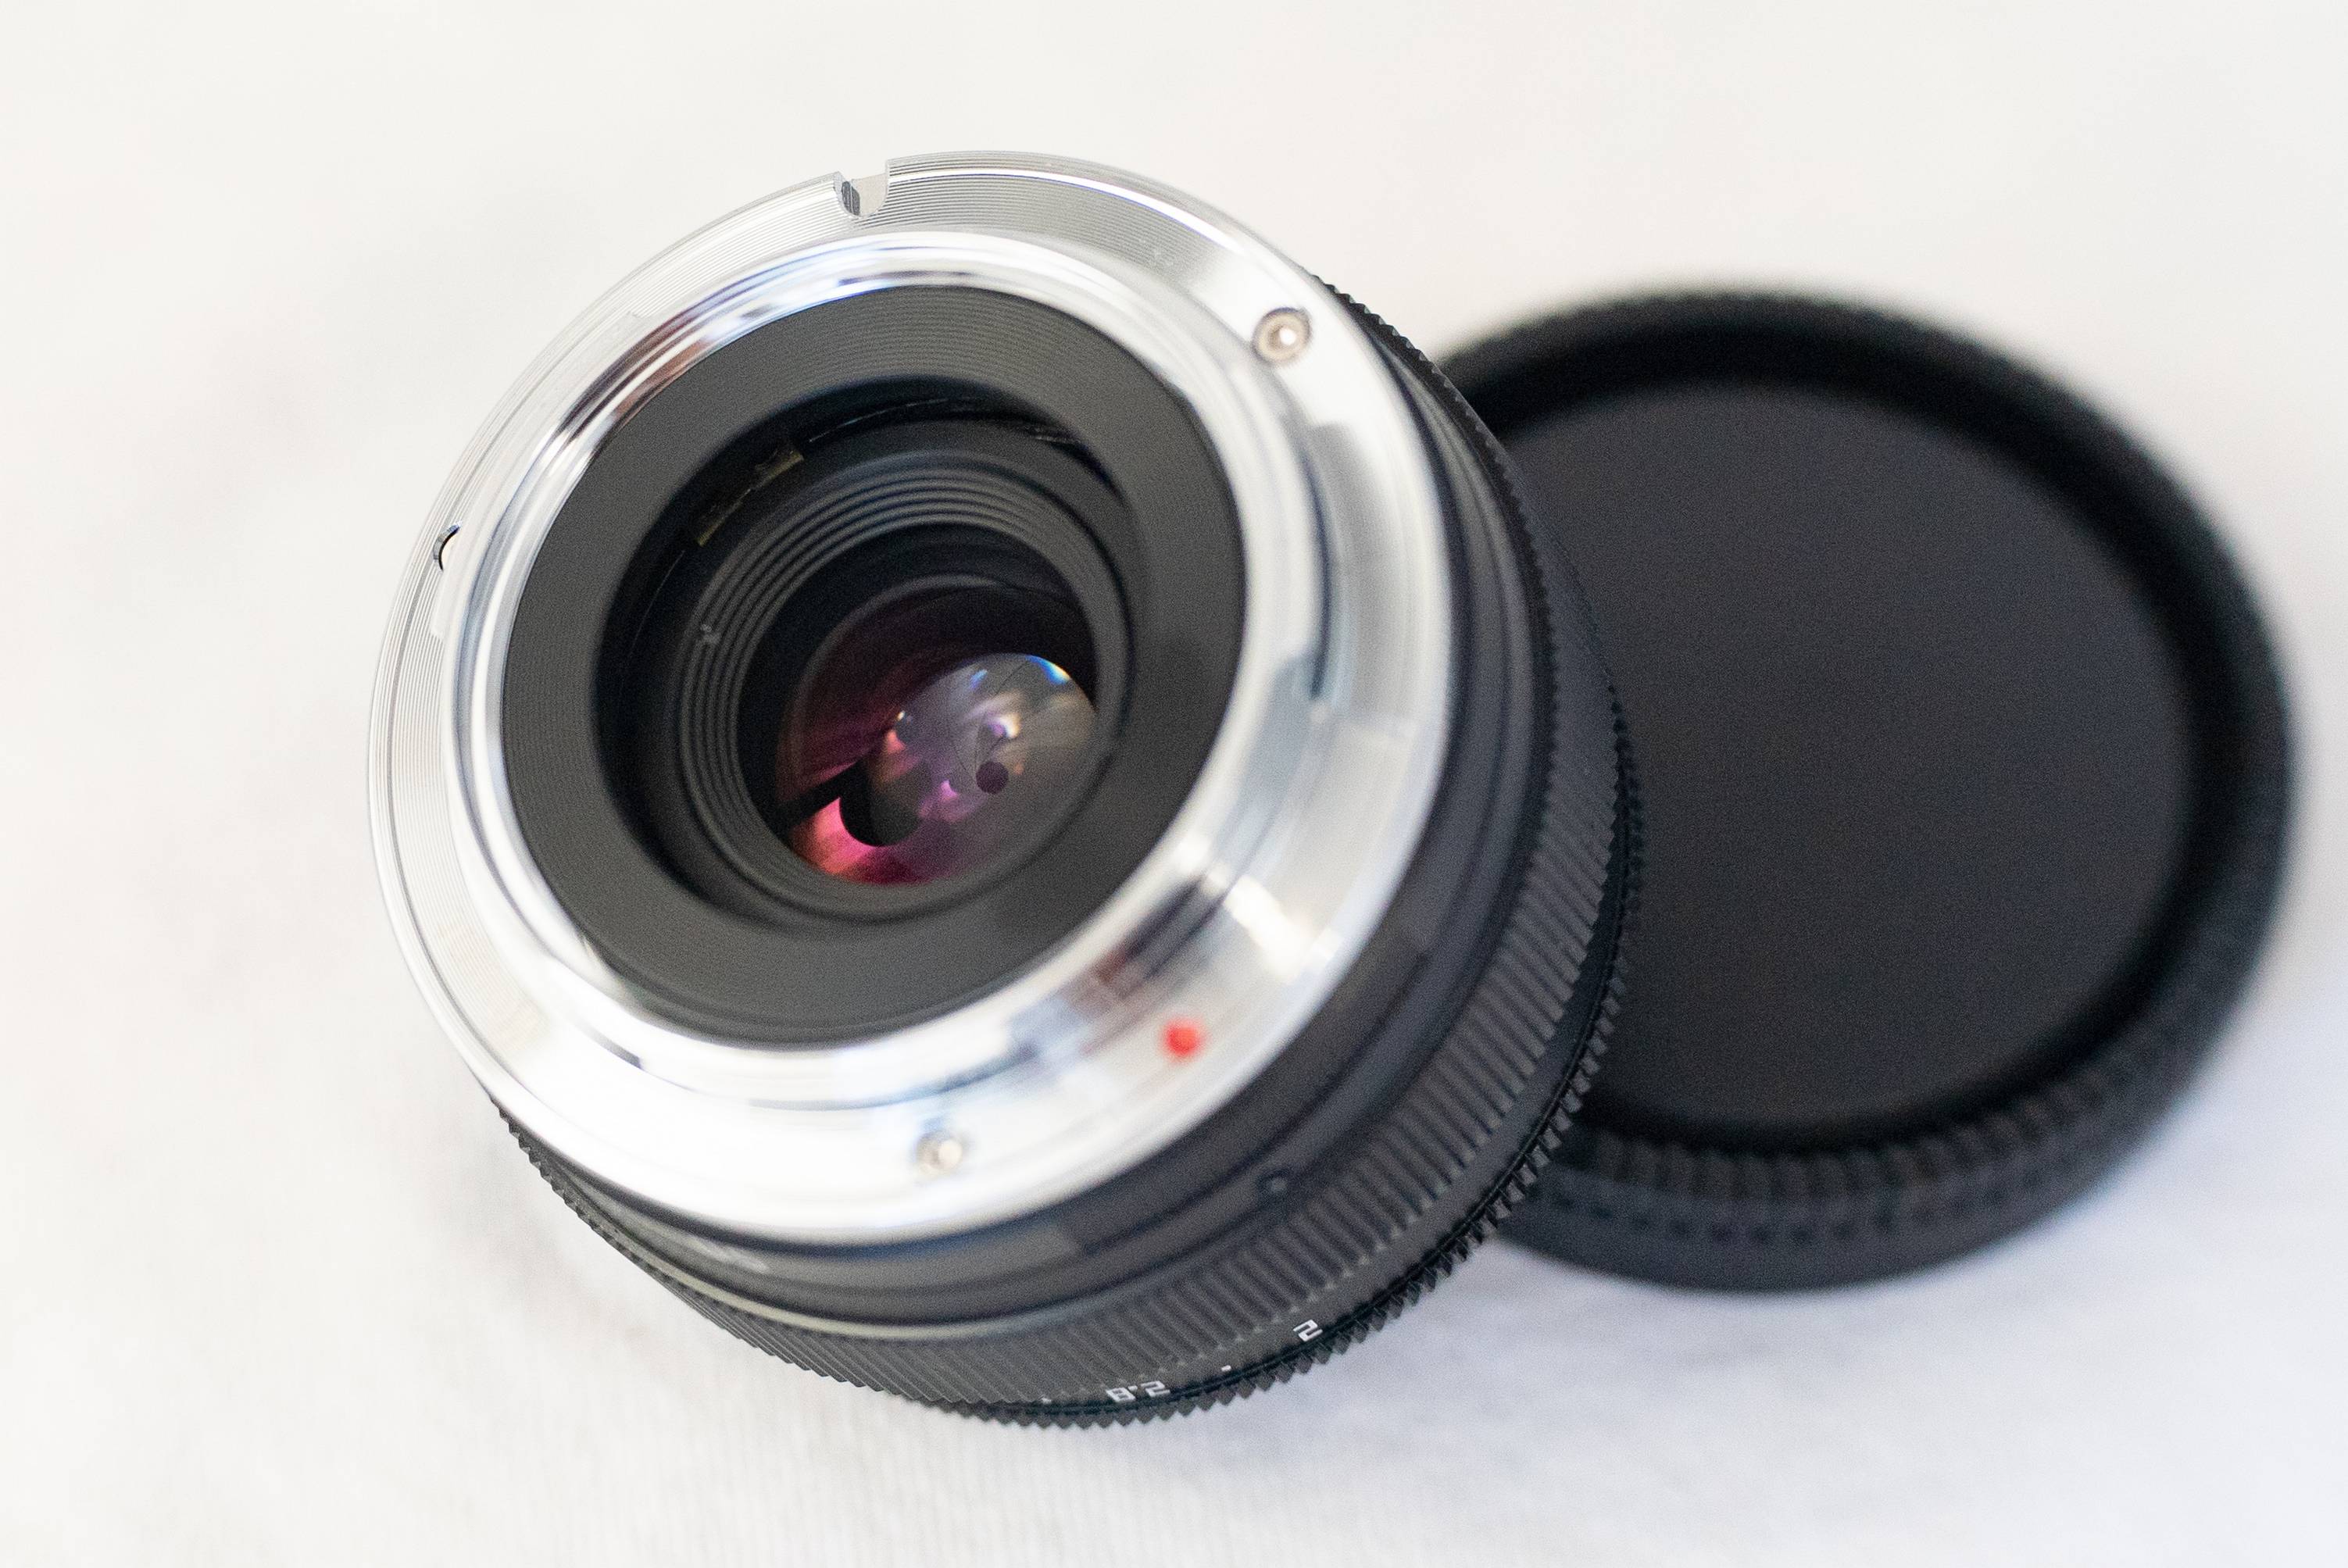 Zicht op de lens bij scherpstellen op MDF vanaf de zijkant van de achterlens. Op 10 uur van de voorwaardelijke wijzerplaat is een messing deel met een dunne geleider zichtbaar waarlangs het lensblok van de lens beweegt.